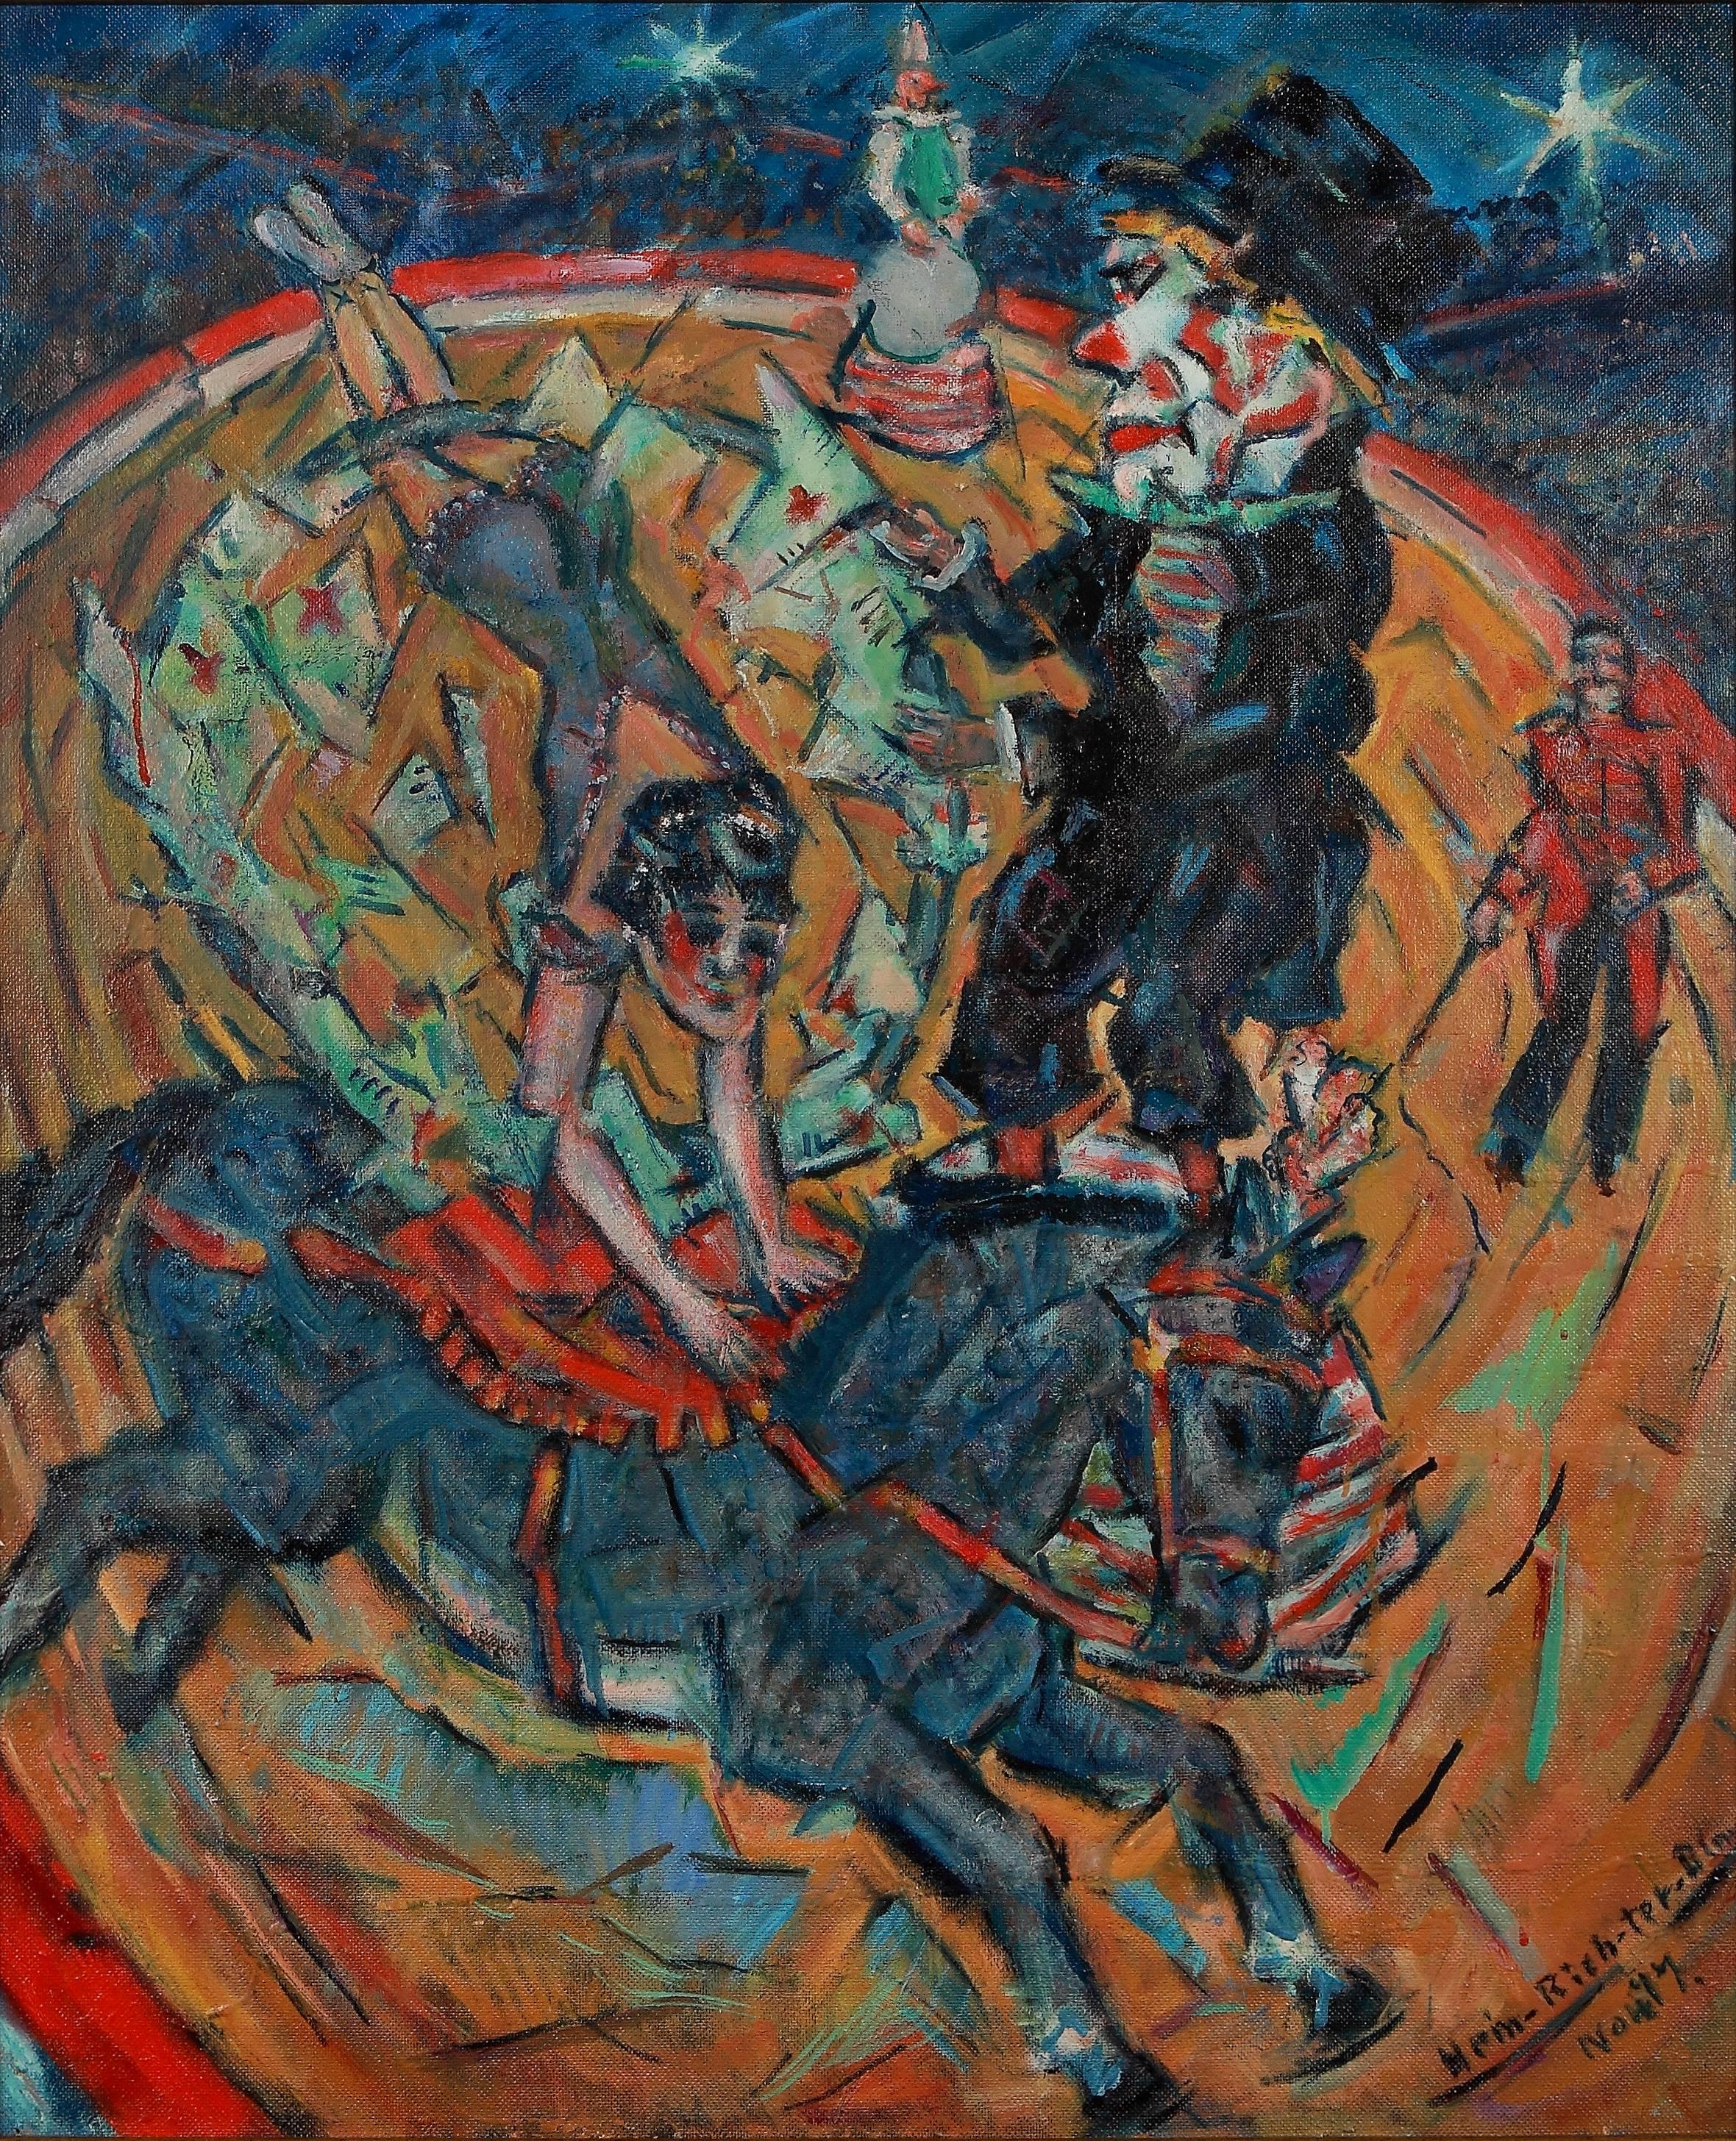 Heinrich Richter « Der alte Clown » (Le vieux clown) Peinture à l'huile sur panneau, 1977 - Painting de Heinrich Richter (b.1884)